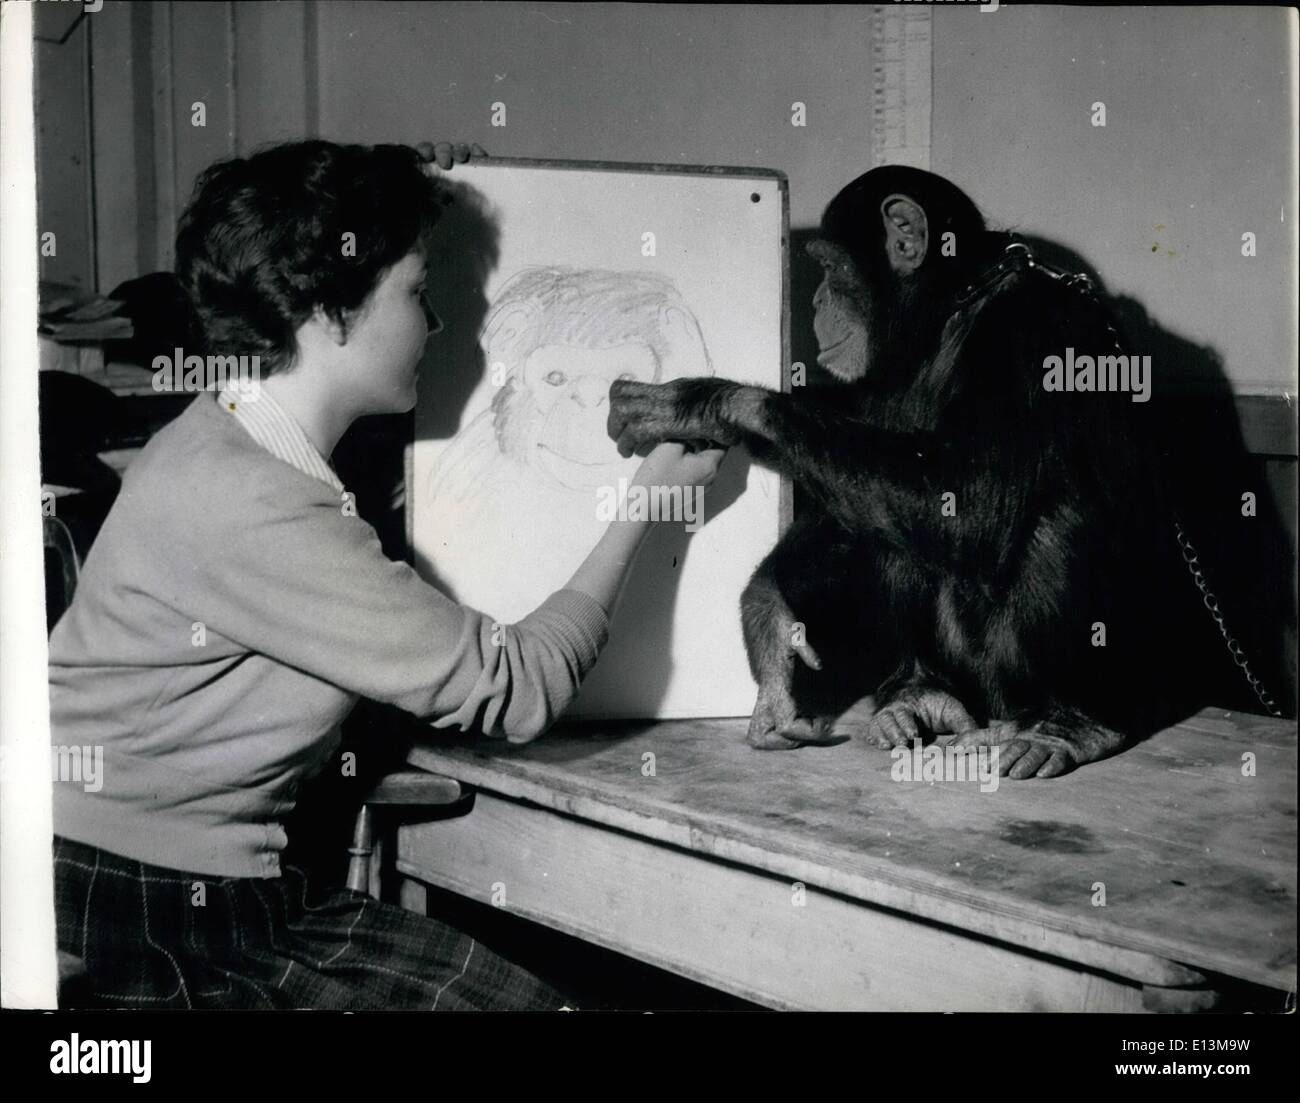 Mar 02, 2012 - Sally aiuta l'artista: Sally chimp tenta di dare art student Marion ultimo una mano con il suo ritratto su cui ha lavorato. Egli è molto critica, e vuole avere un andare lui stesso. Che attira chi allo Zoo: Sally prende all'arte: gli studenti di arte sono dato ogni incoraggiamento allo zoo. Più popolari temi per gli studenti regolari sono gli scimpanzé e 6 1/2 anni Sally è completamente inutile circa la sua modellazione. Quando 18-anno-vecchio Marion ultimo, di Hornsey Scuola di Arte era a metà strada attraverso un ritratto della sua, Sally ha deciso che le posizioni dovrebbero essere invertite Foto Stock